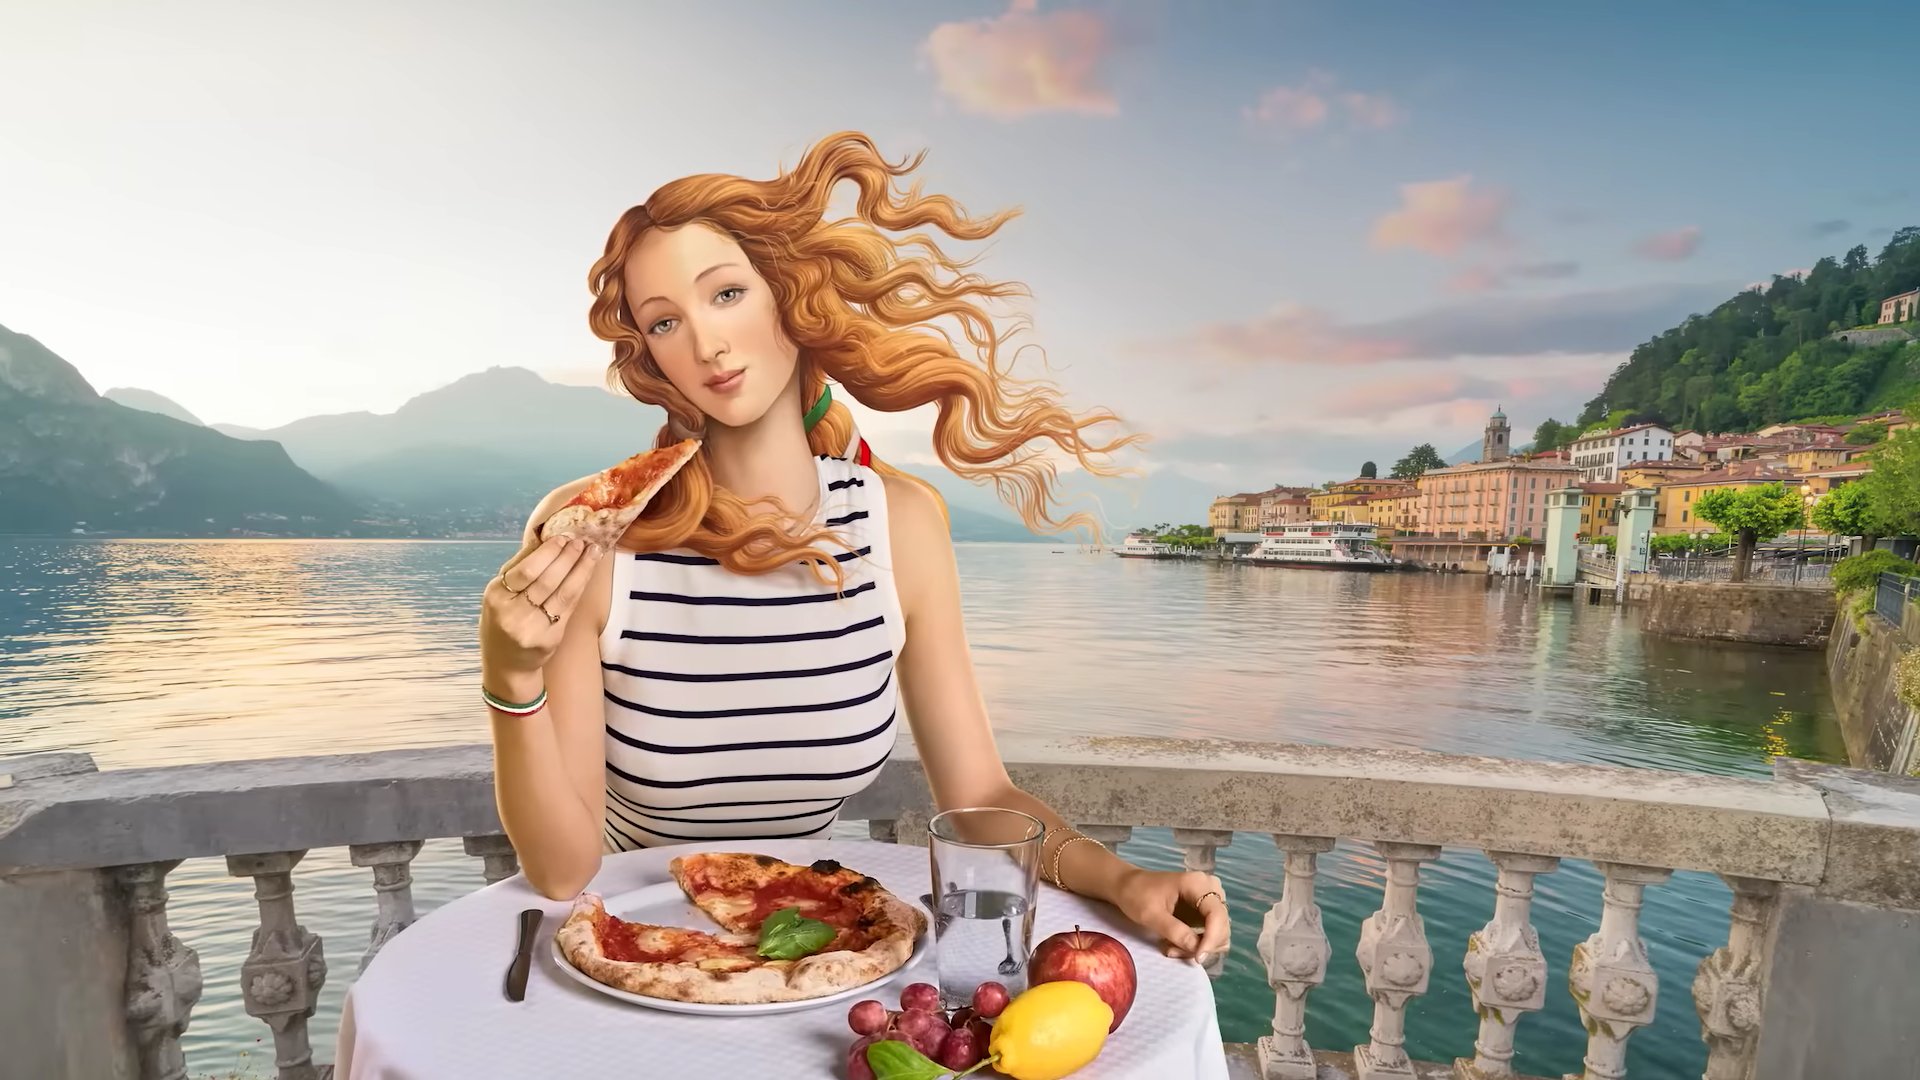 Jelenet az olasz turisztikai imázsfilmből